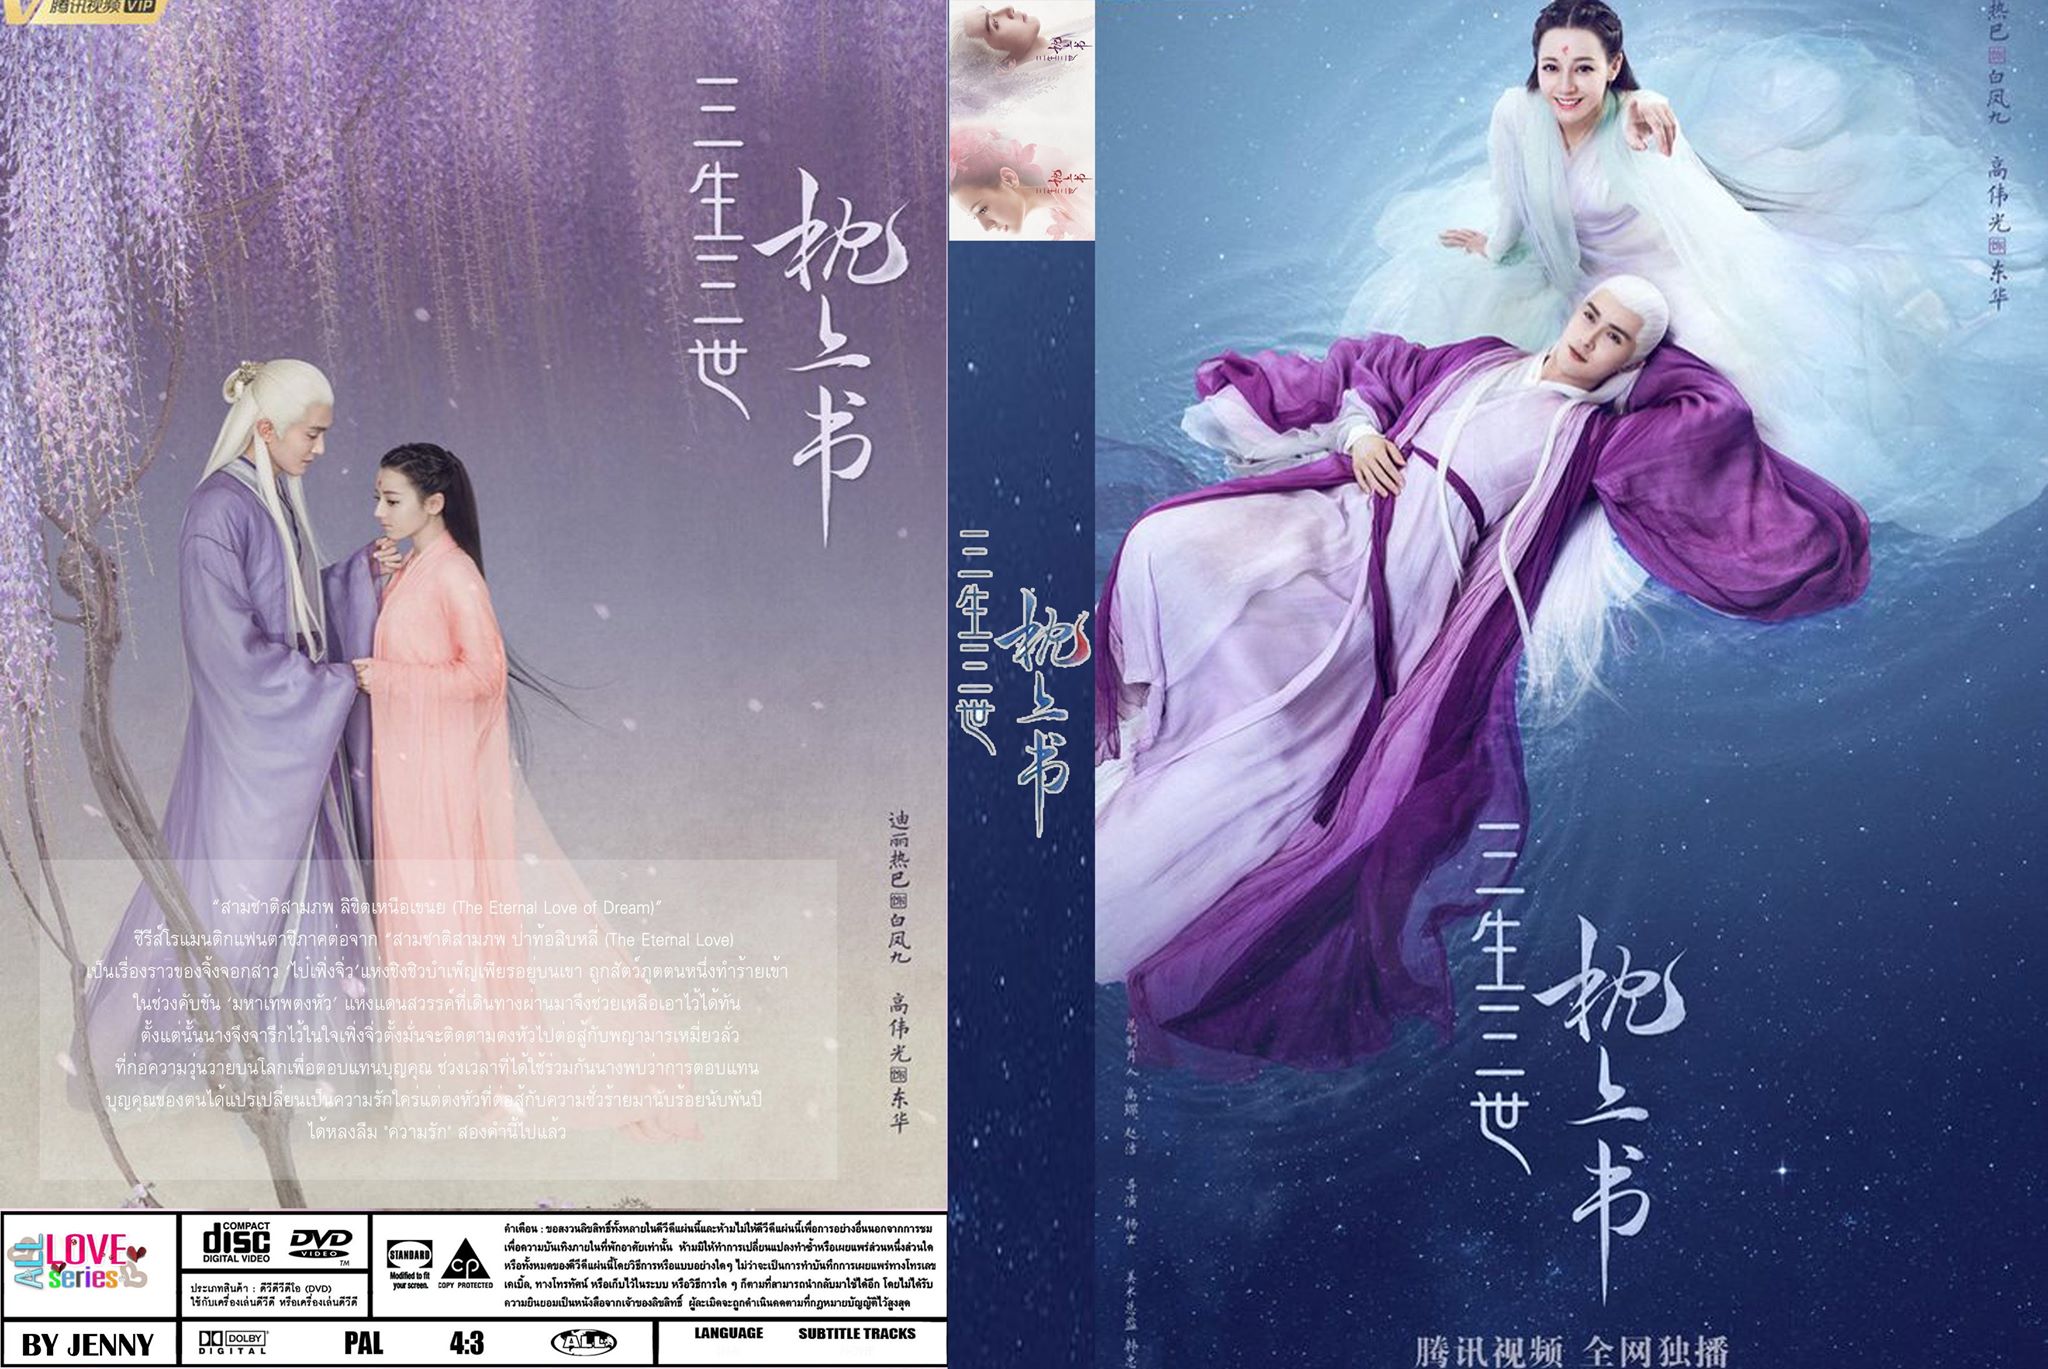 หนังจีนชุด Eternal Love Of Dream สามชาติสามภพลิขิตเหนือเขนย [พากยไทย] 11 แผ่นจบ hd ดีวีดี ปก+สกรีน